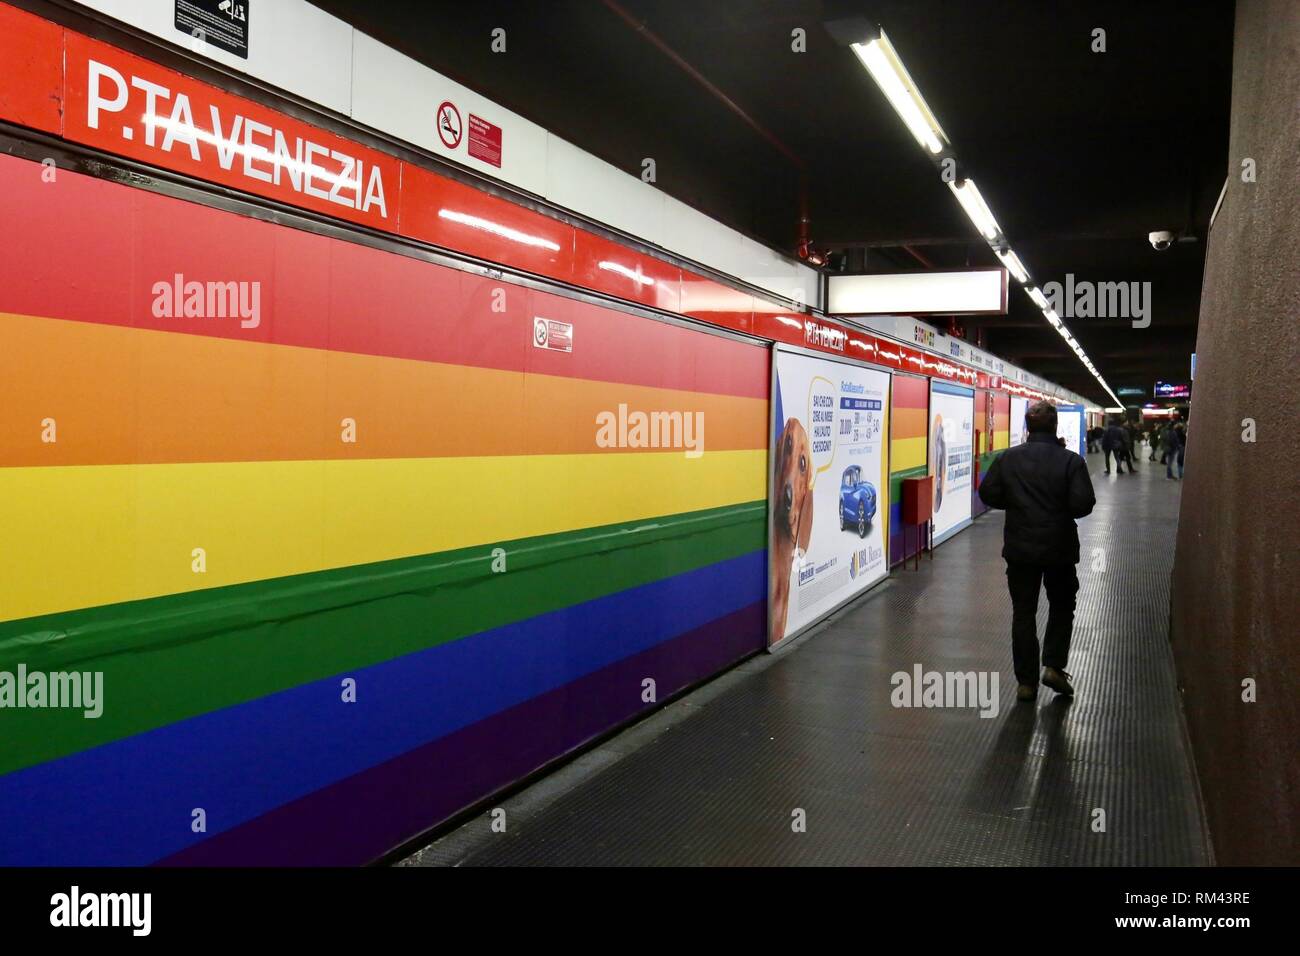 Restored the rainbow livery at the Porta Venezia metro stop (Massimo  Alberico, Milan - 2019-02-12) p.s. la foto e' utilizzabile nel rispetto del  contesto in cui e' stata scattata, e senza intento